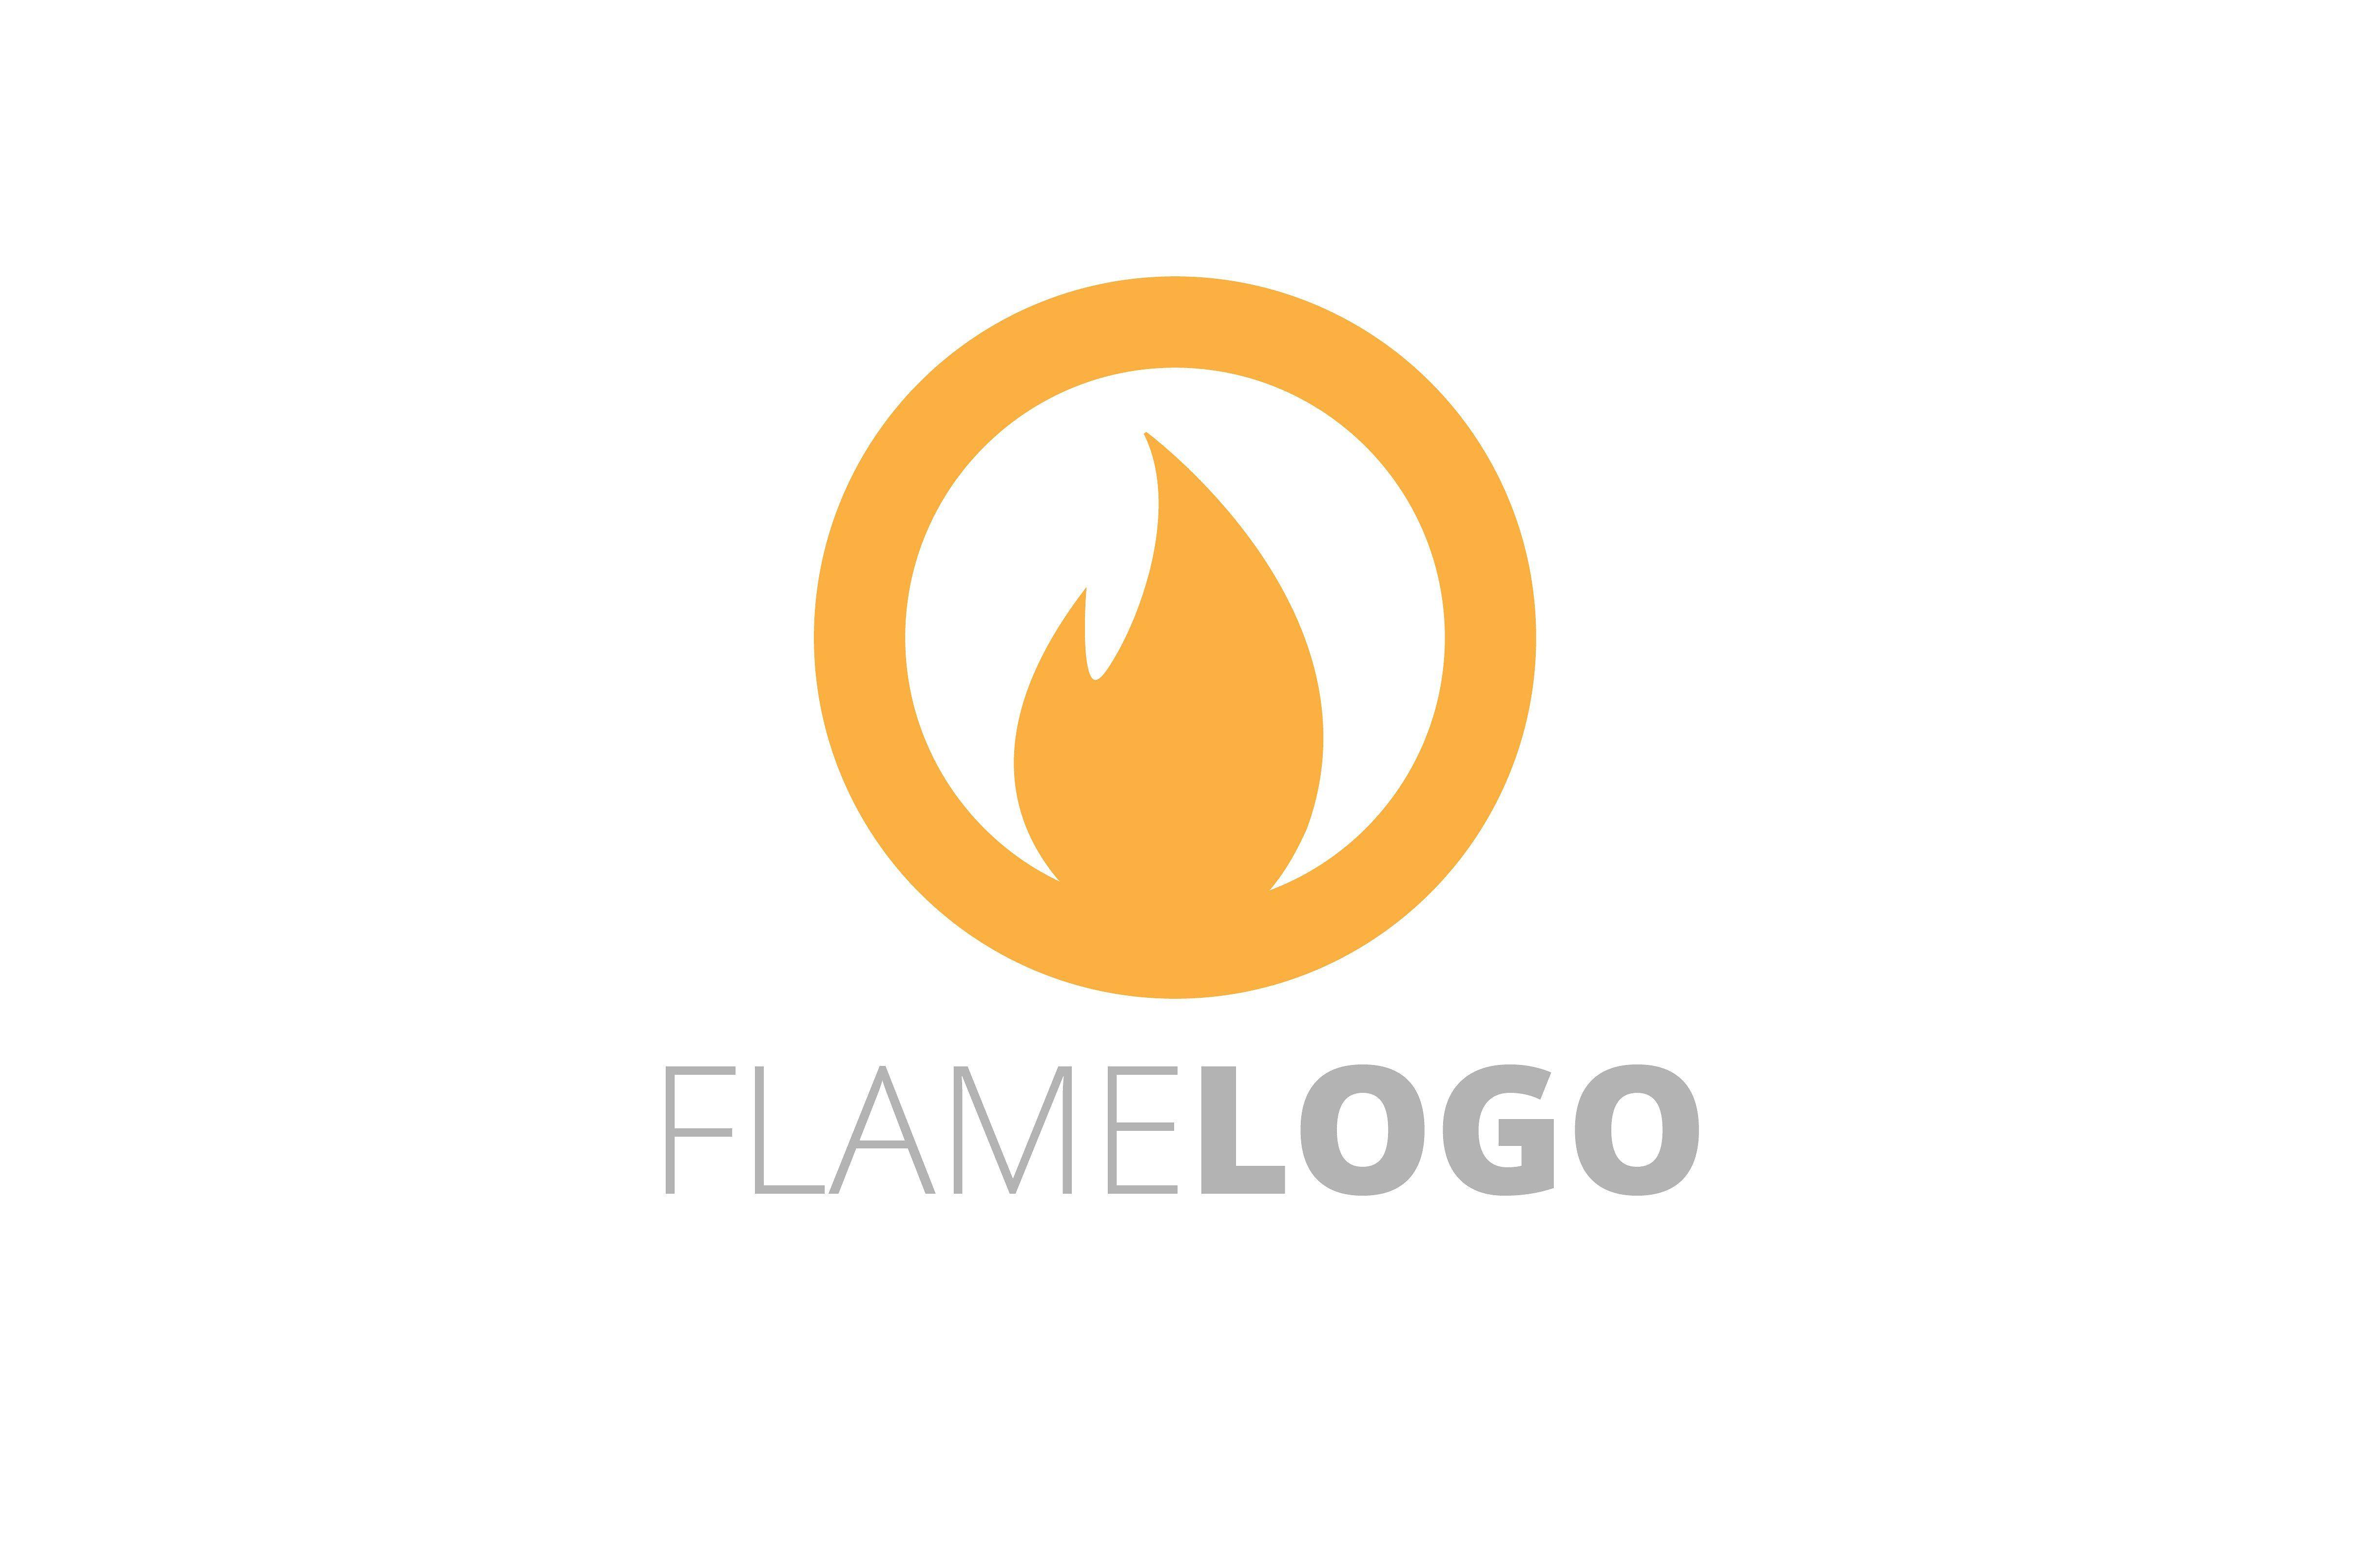 The Flame Logo - Flame Logo Logo Templates Creative Market